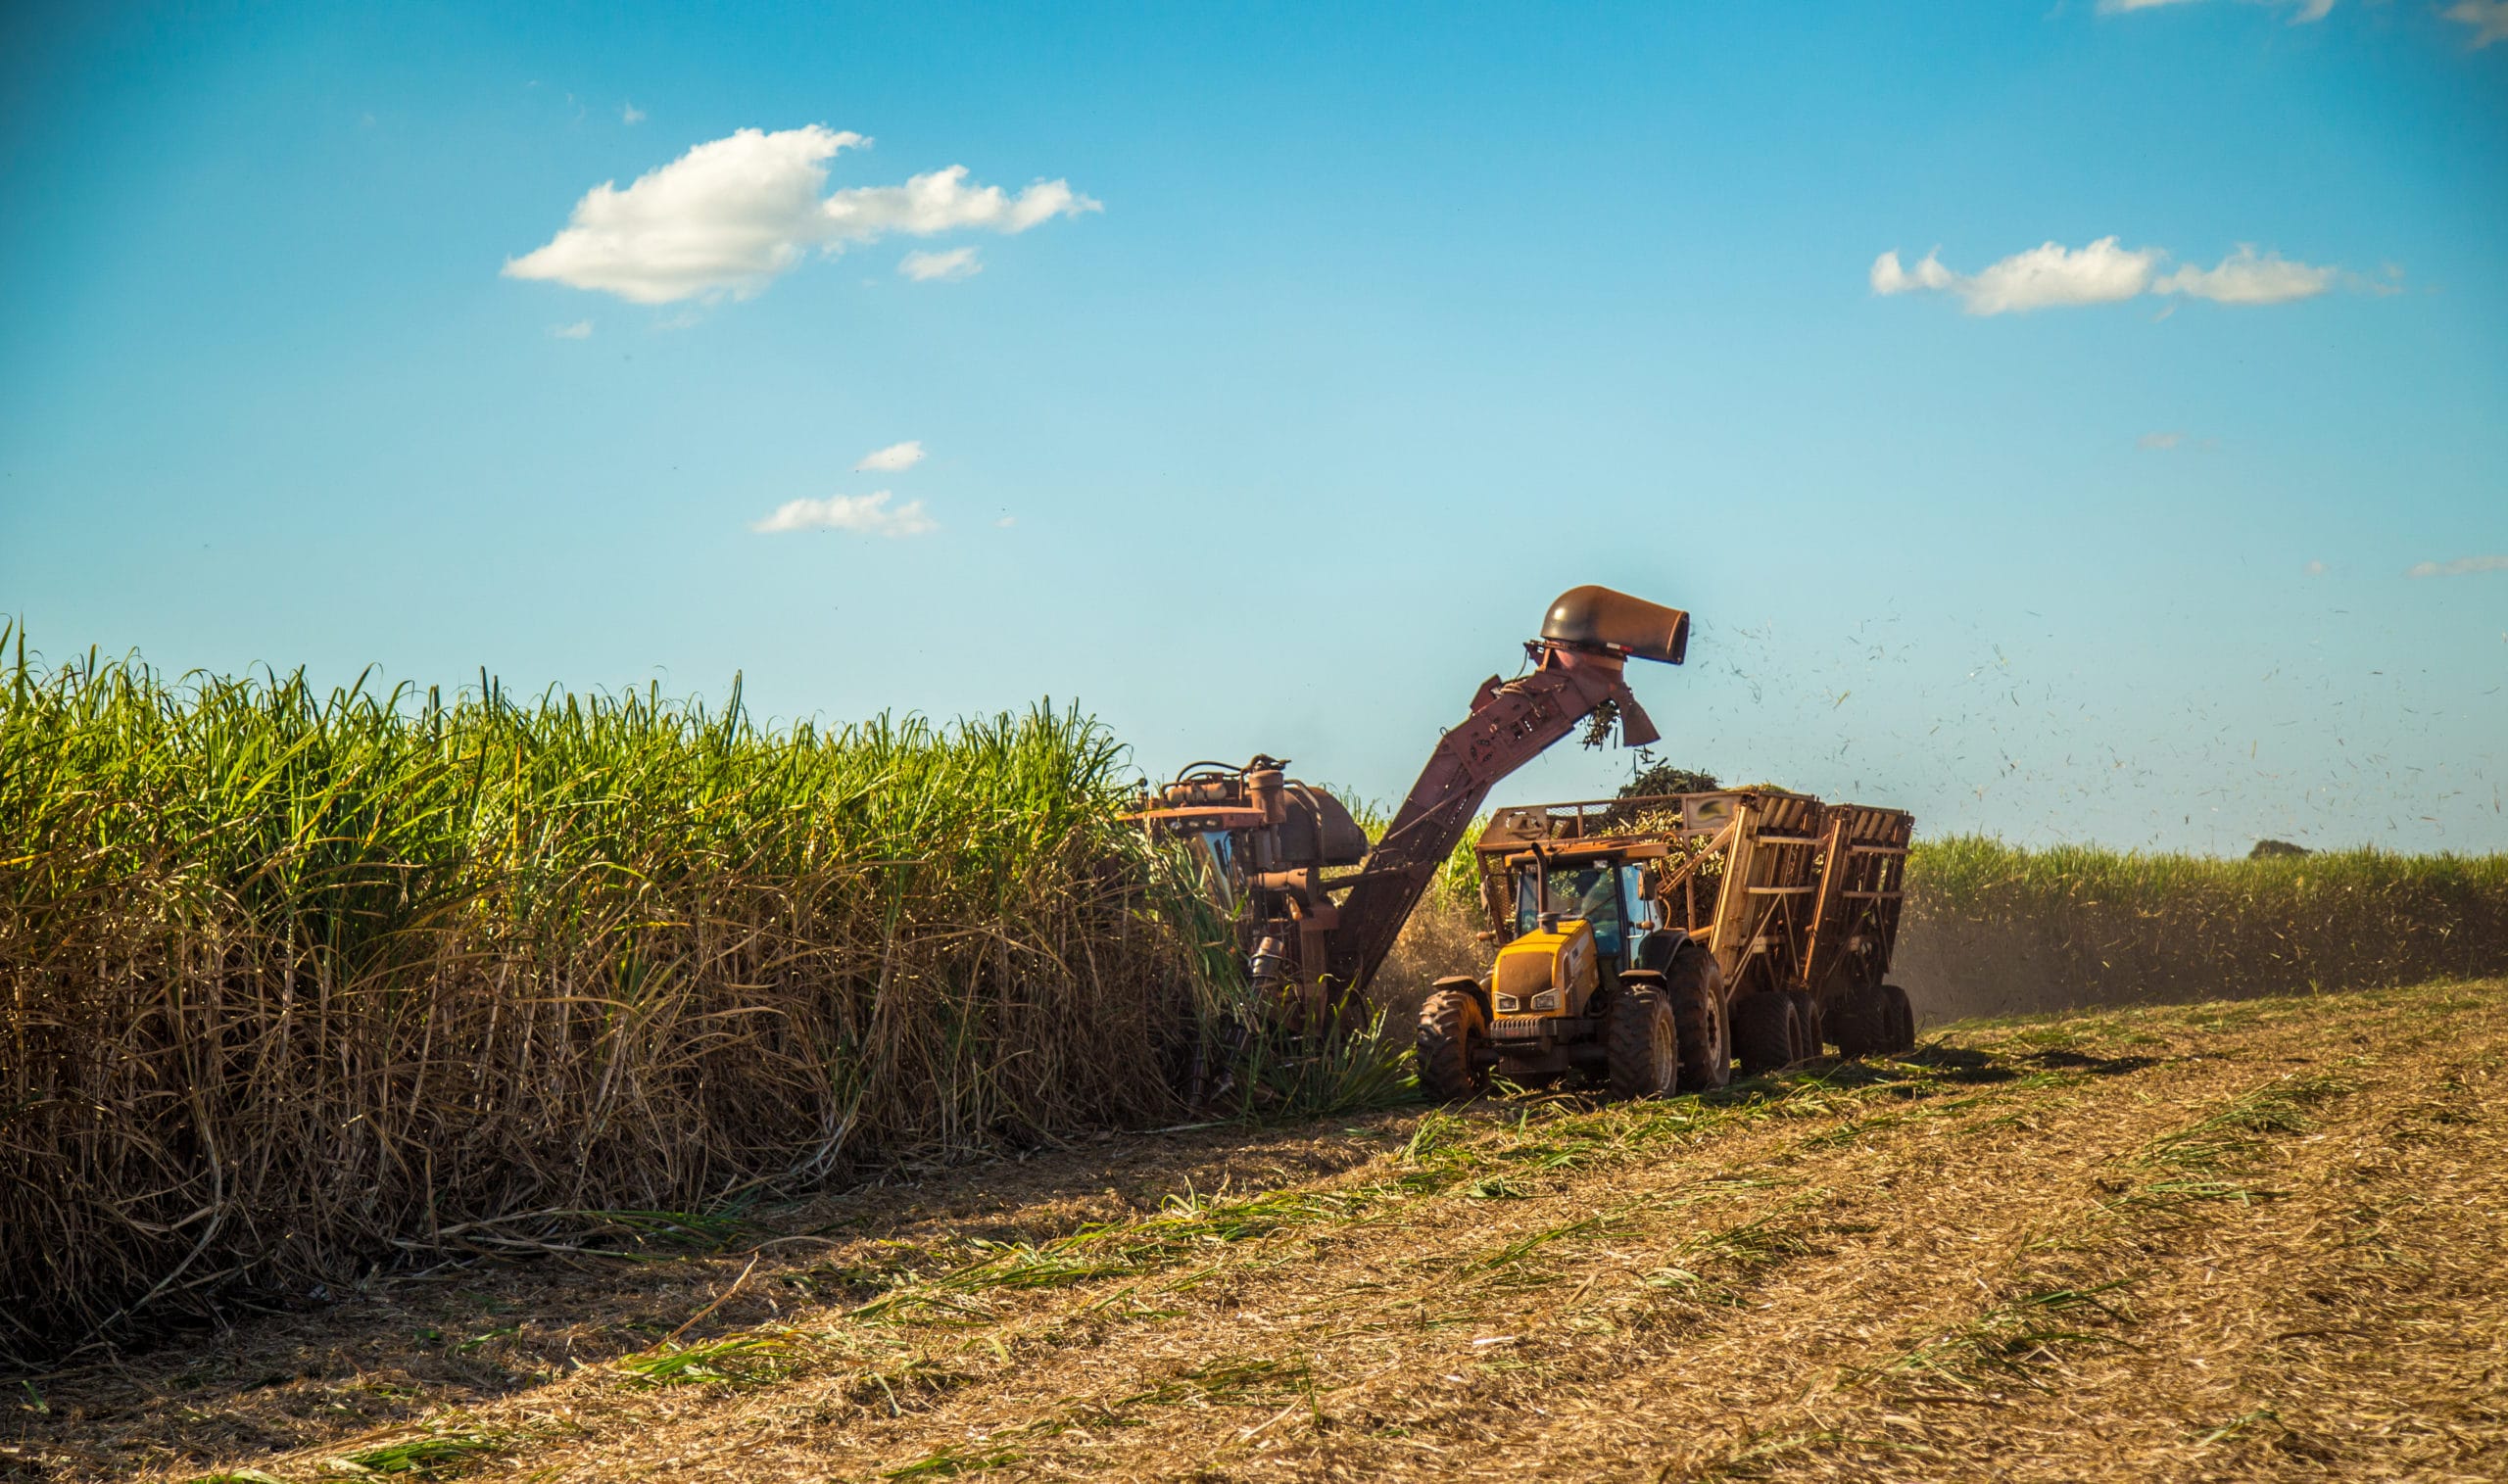 Crecimiento de la agroindustria y el turismo en Costa Rica generaría “importante impulso” a la economía, dice informe del BID